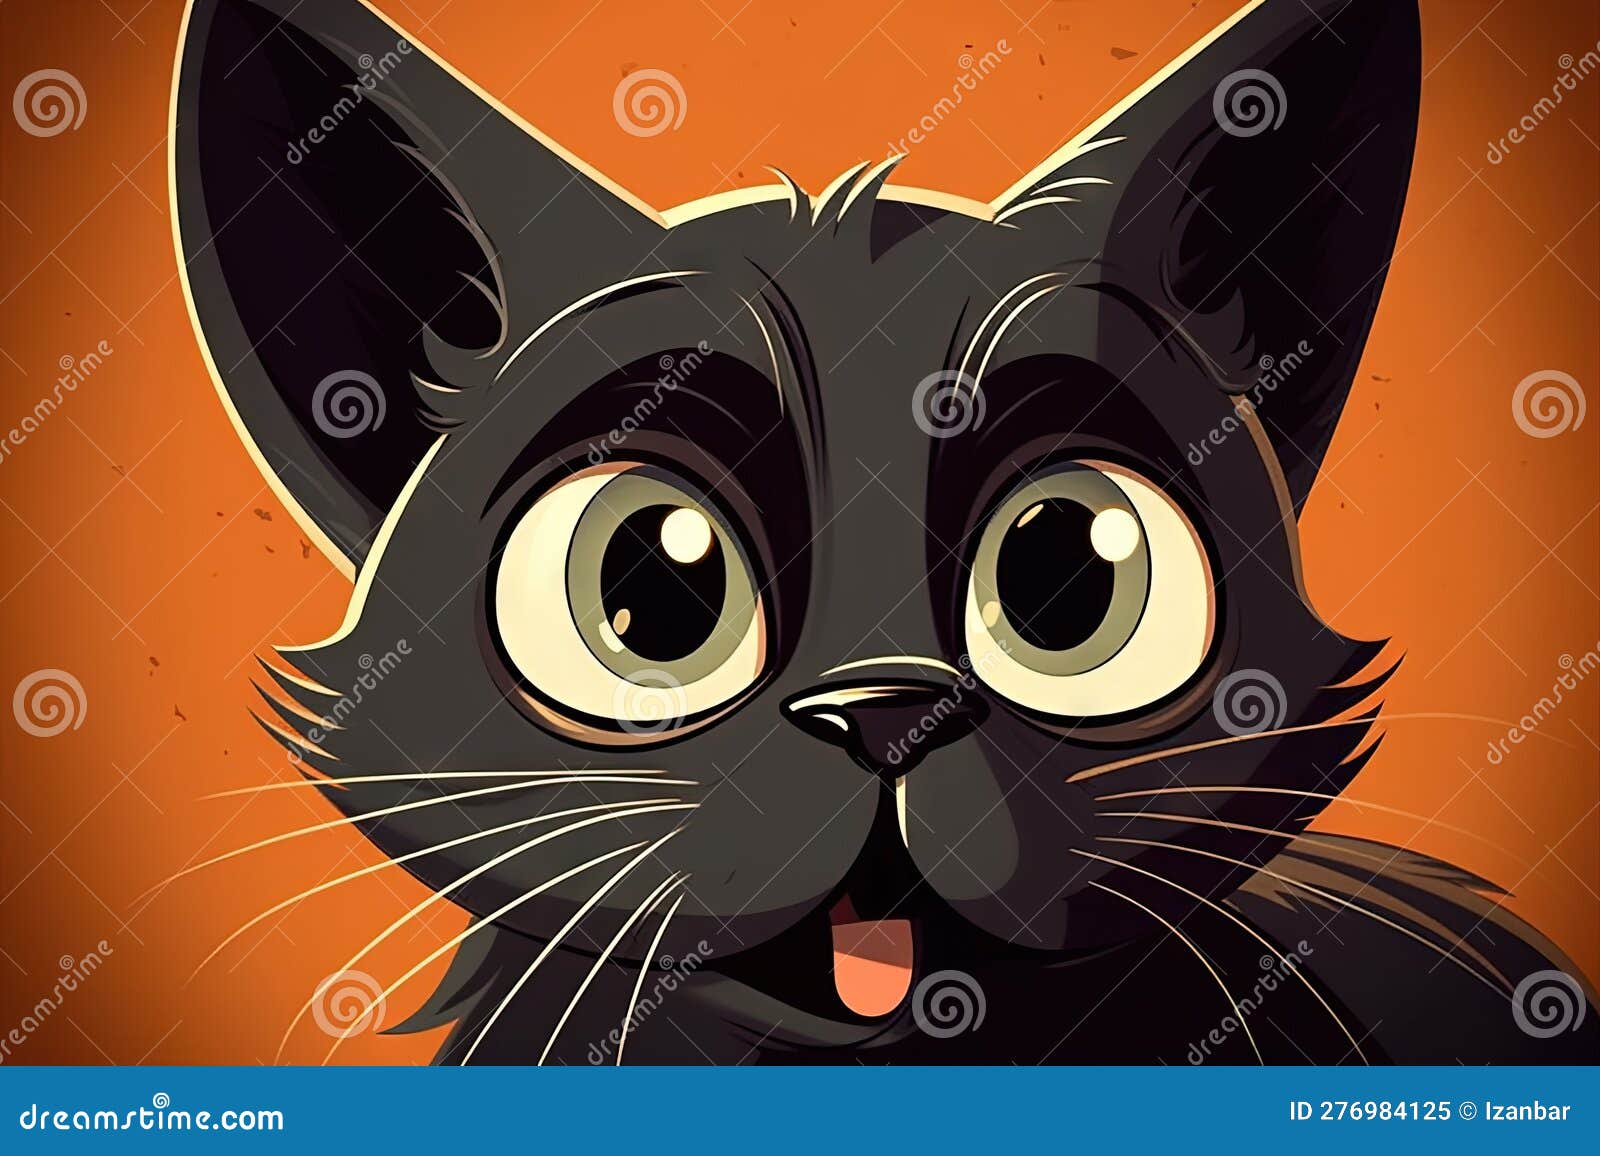 Ilustrações dos gatos mais famosos dos desenhos animados